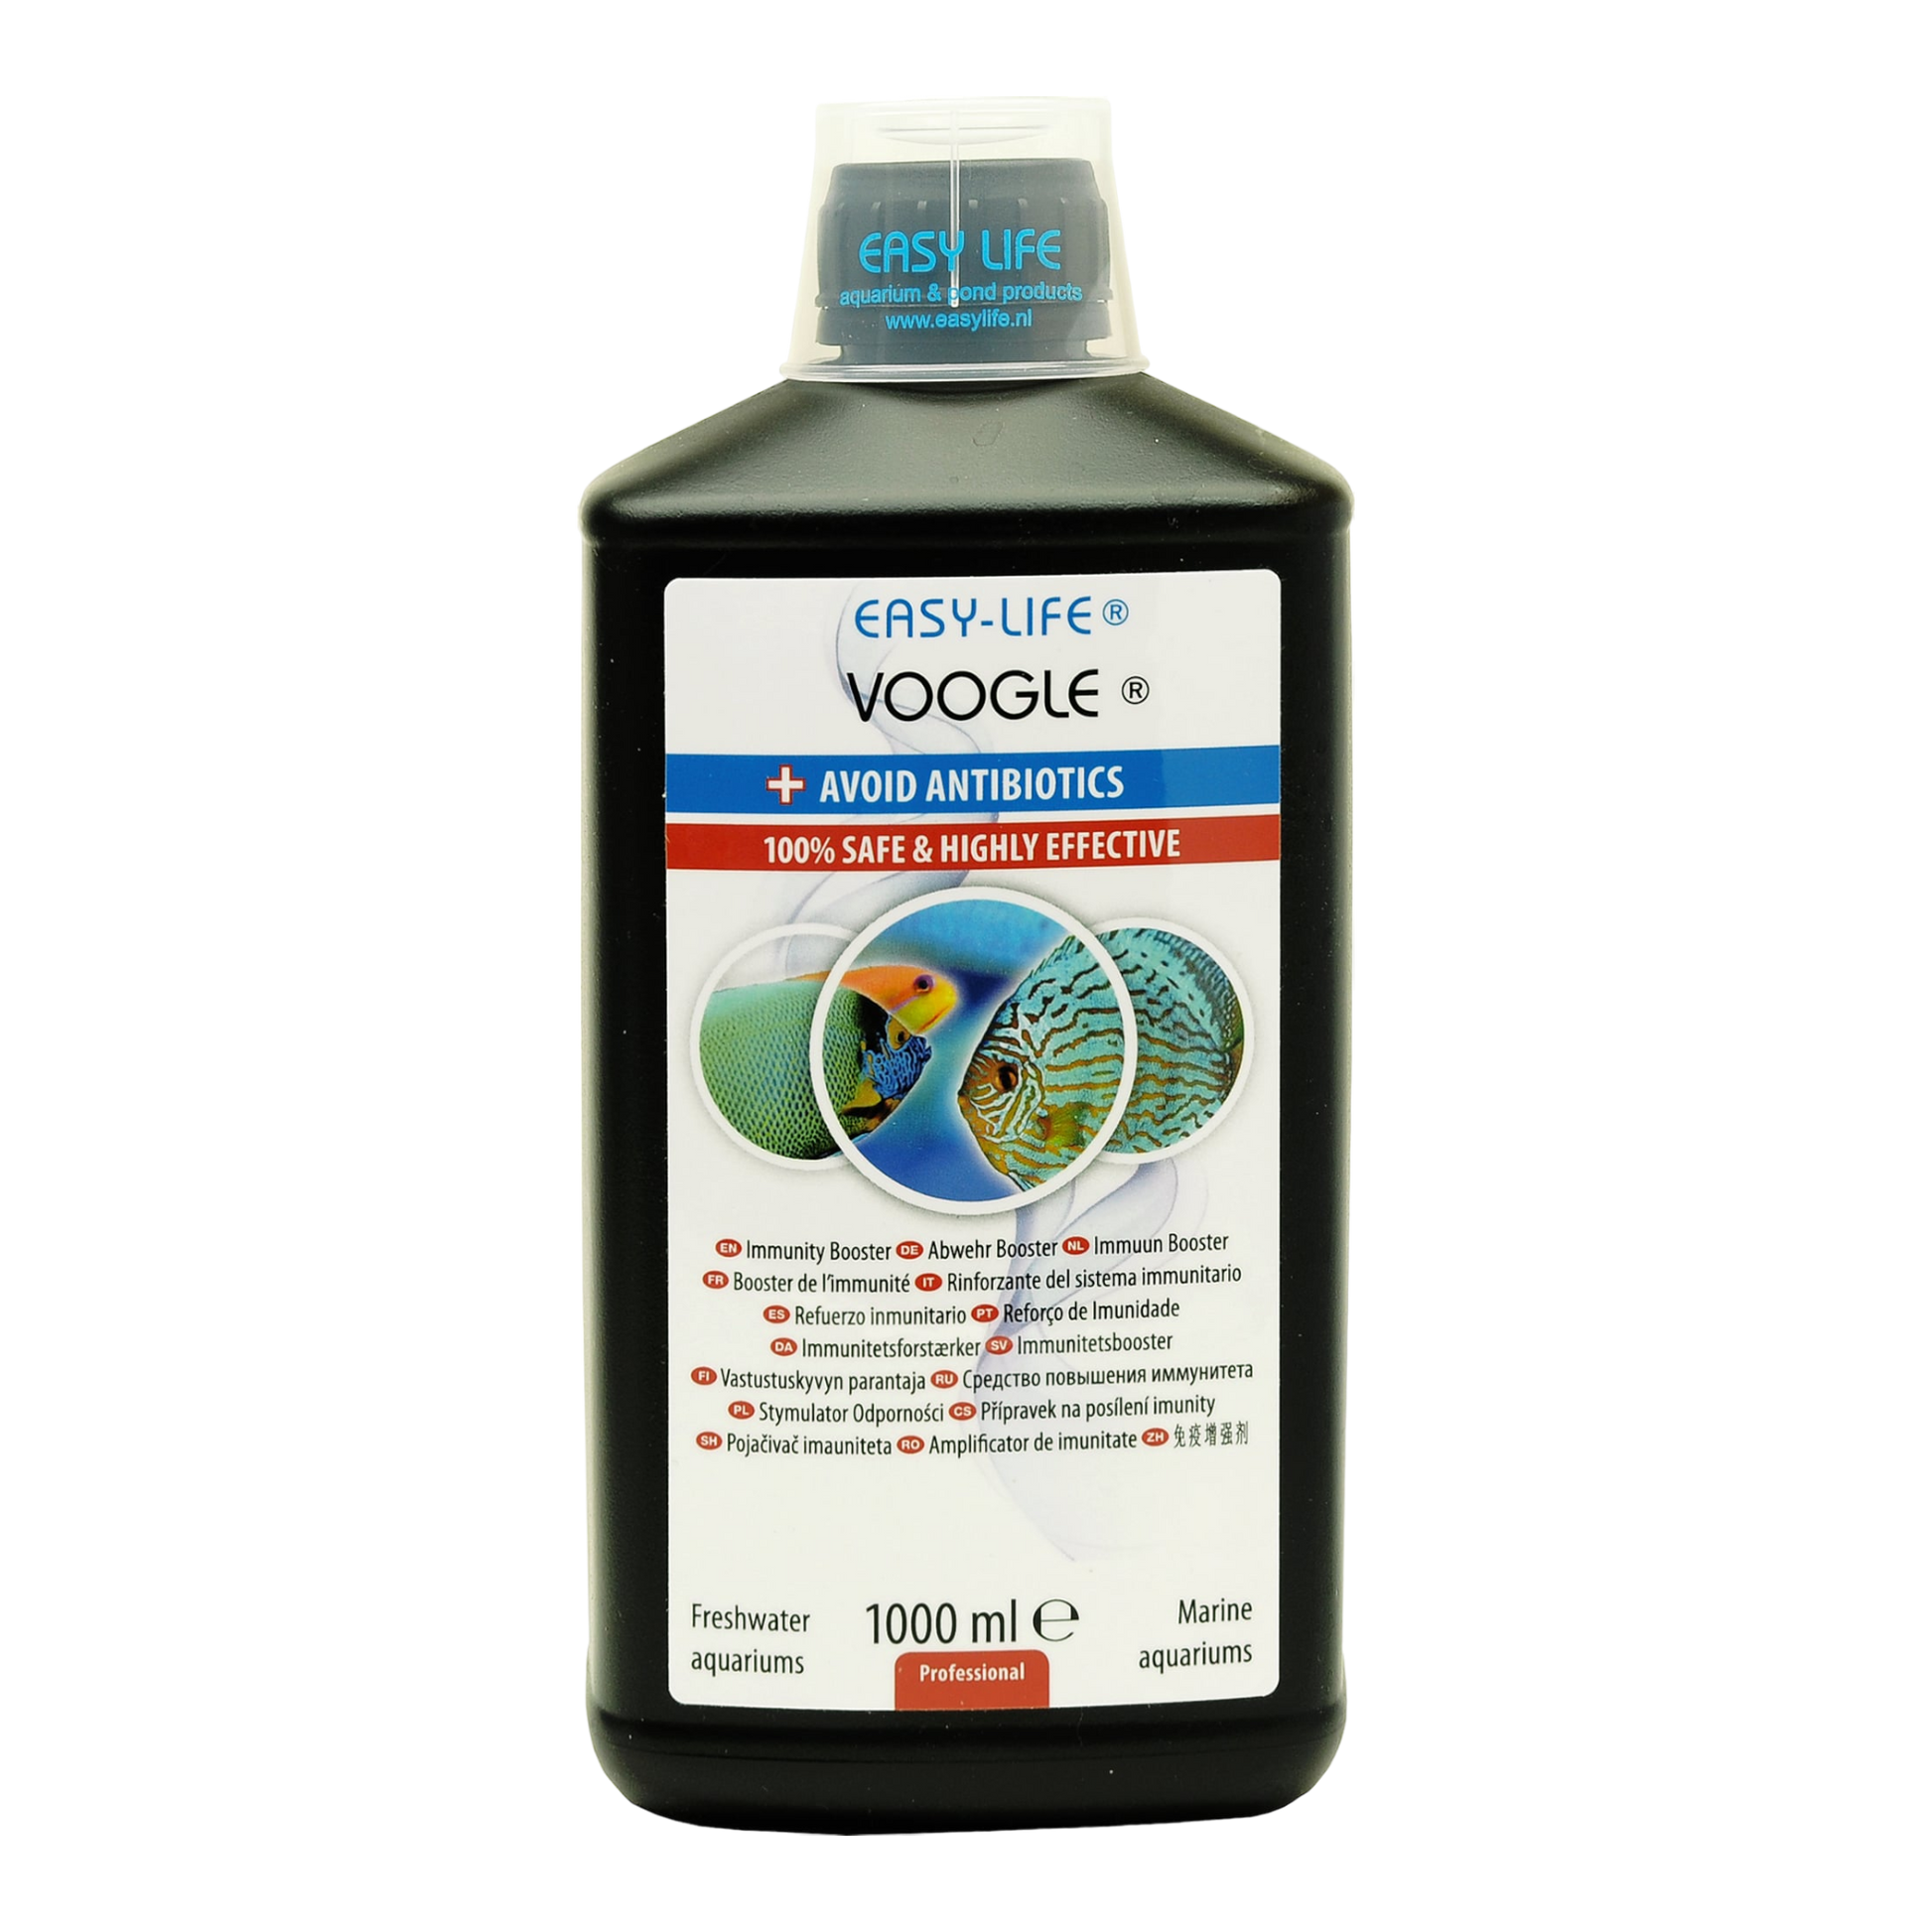 Voogle ist ein innovatives Mittel  das die Gesundheit von Fischen unterstützt und das Immunsystem stärkt. Die Verwendung von Voogle beschränkt die Anwendung von Antibiotika auf ein Minimum. Das natürliche Immunsystem wird angeregt, und damit sind die Fische in der Lage, sich selbst besser gegen Krankheiten zu schützen.